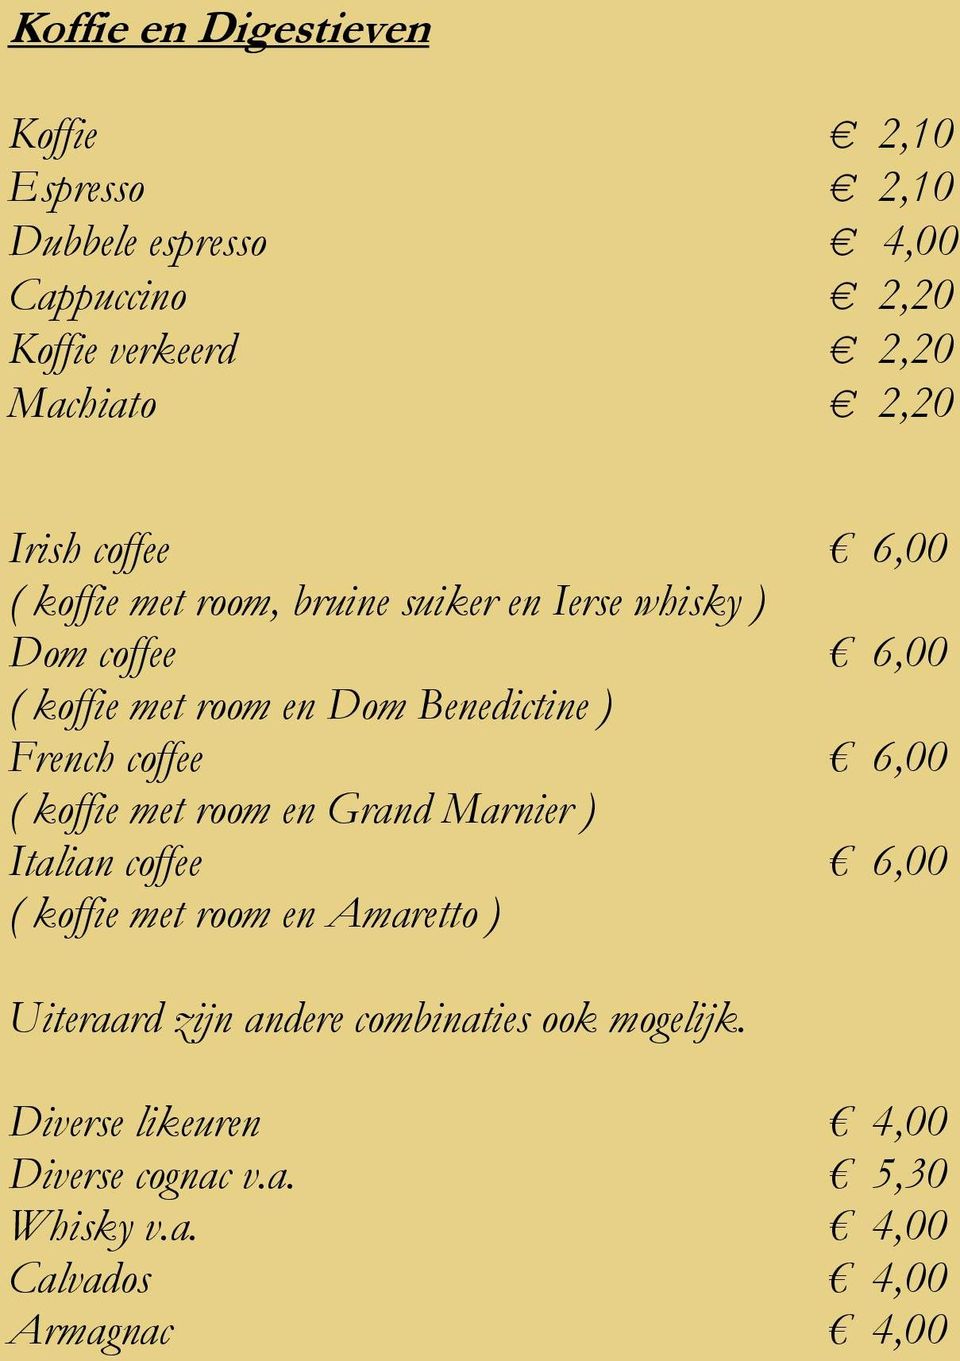 ) French coffee 6,00 ( koffie met room en Grand Marnier ) Italian coffee 6,00 ( koffie met room en Amaretto ) Uiteraard